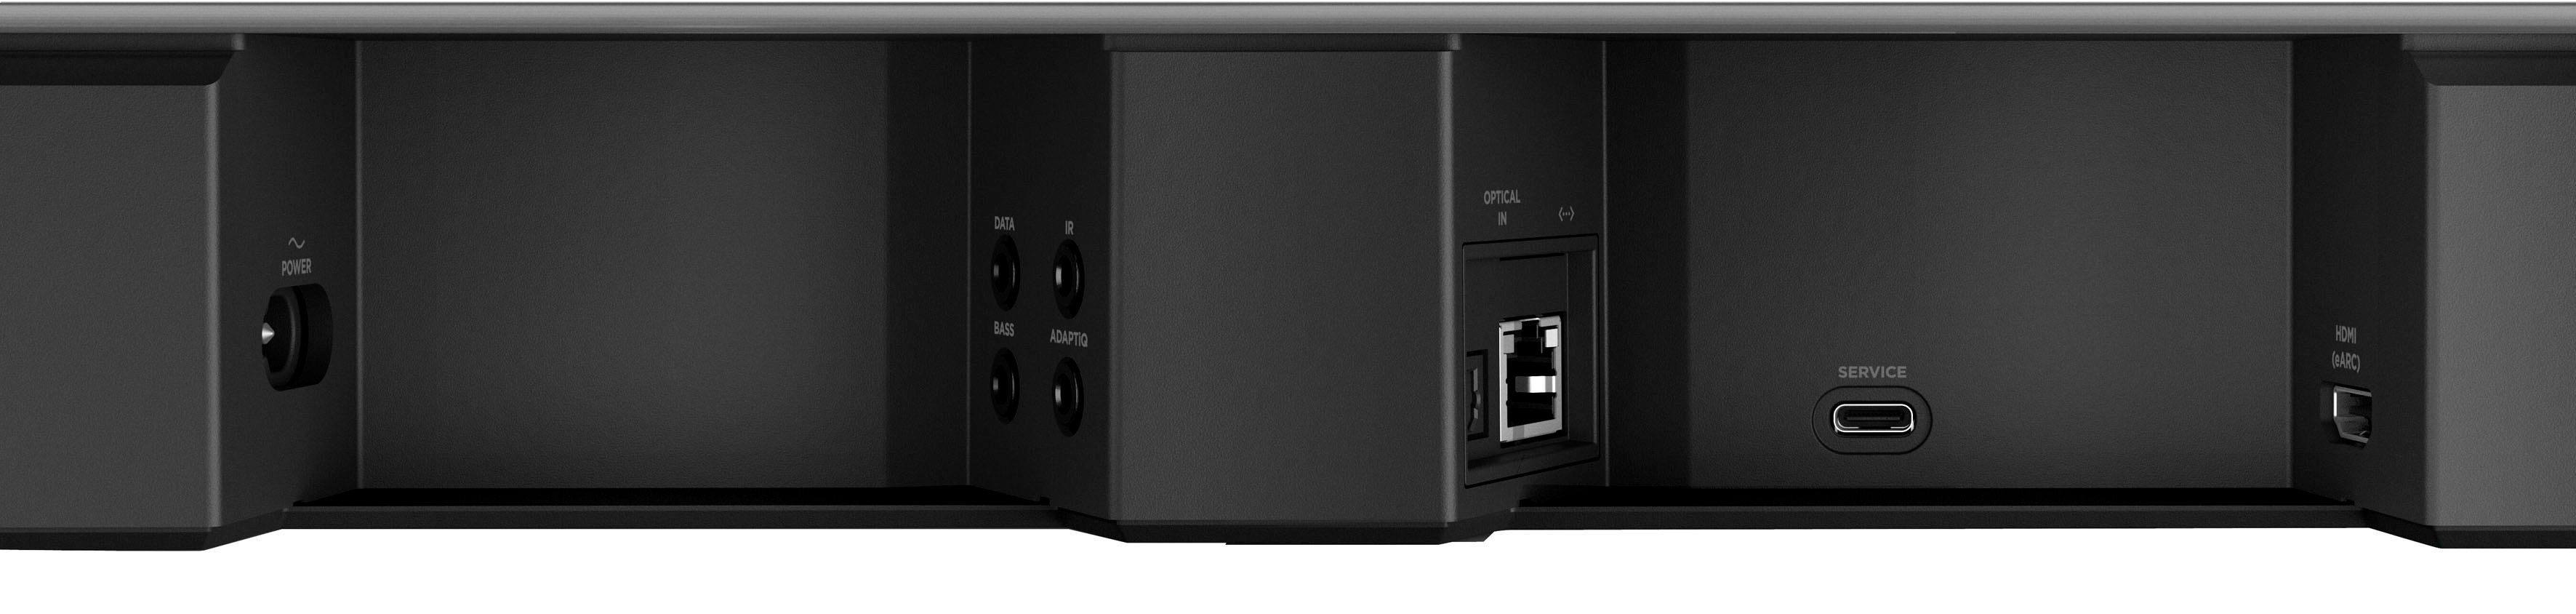 Bose schwarz Google Alexa Amazon Soundbar Smart 900 LAN Soundbar mit Assistant) (Ethernet), (Bluetooth, und